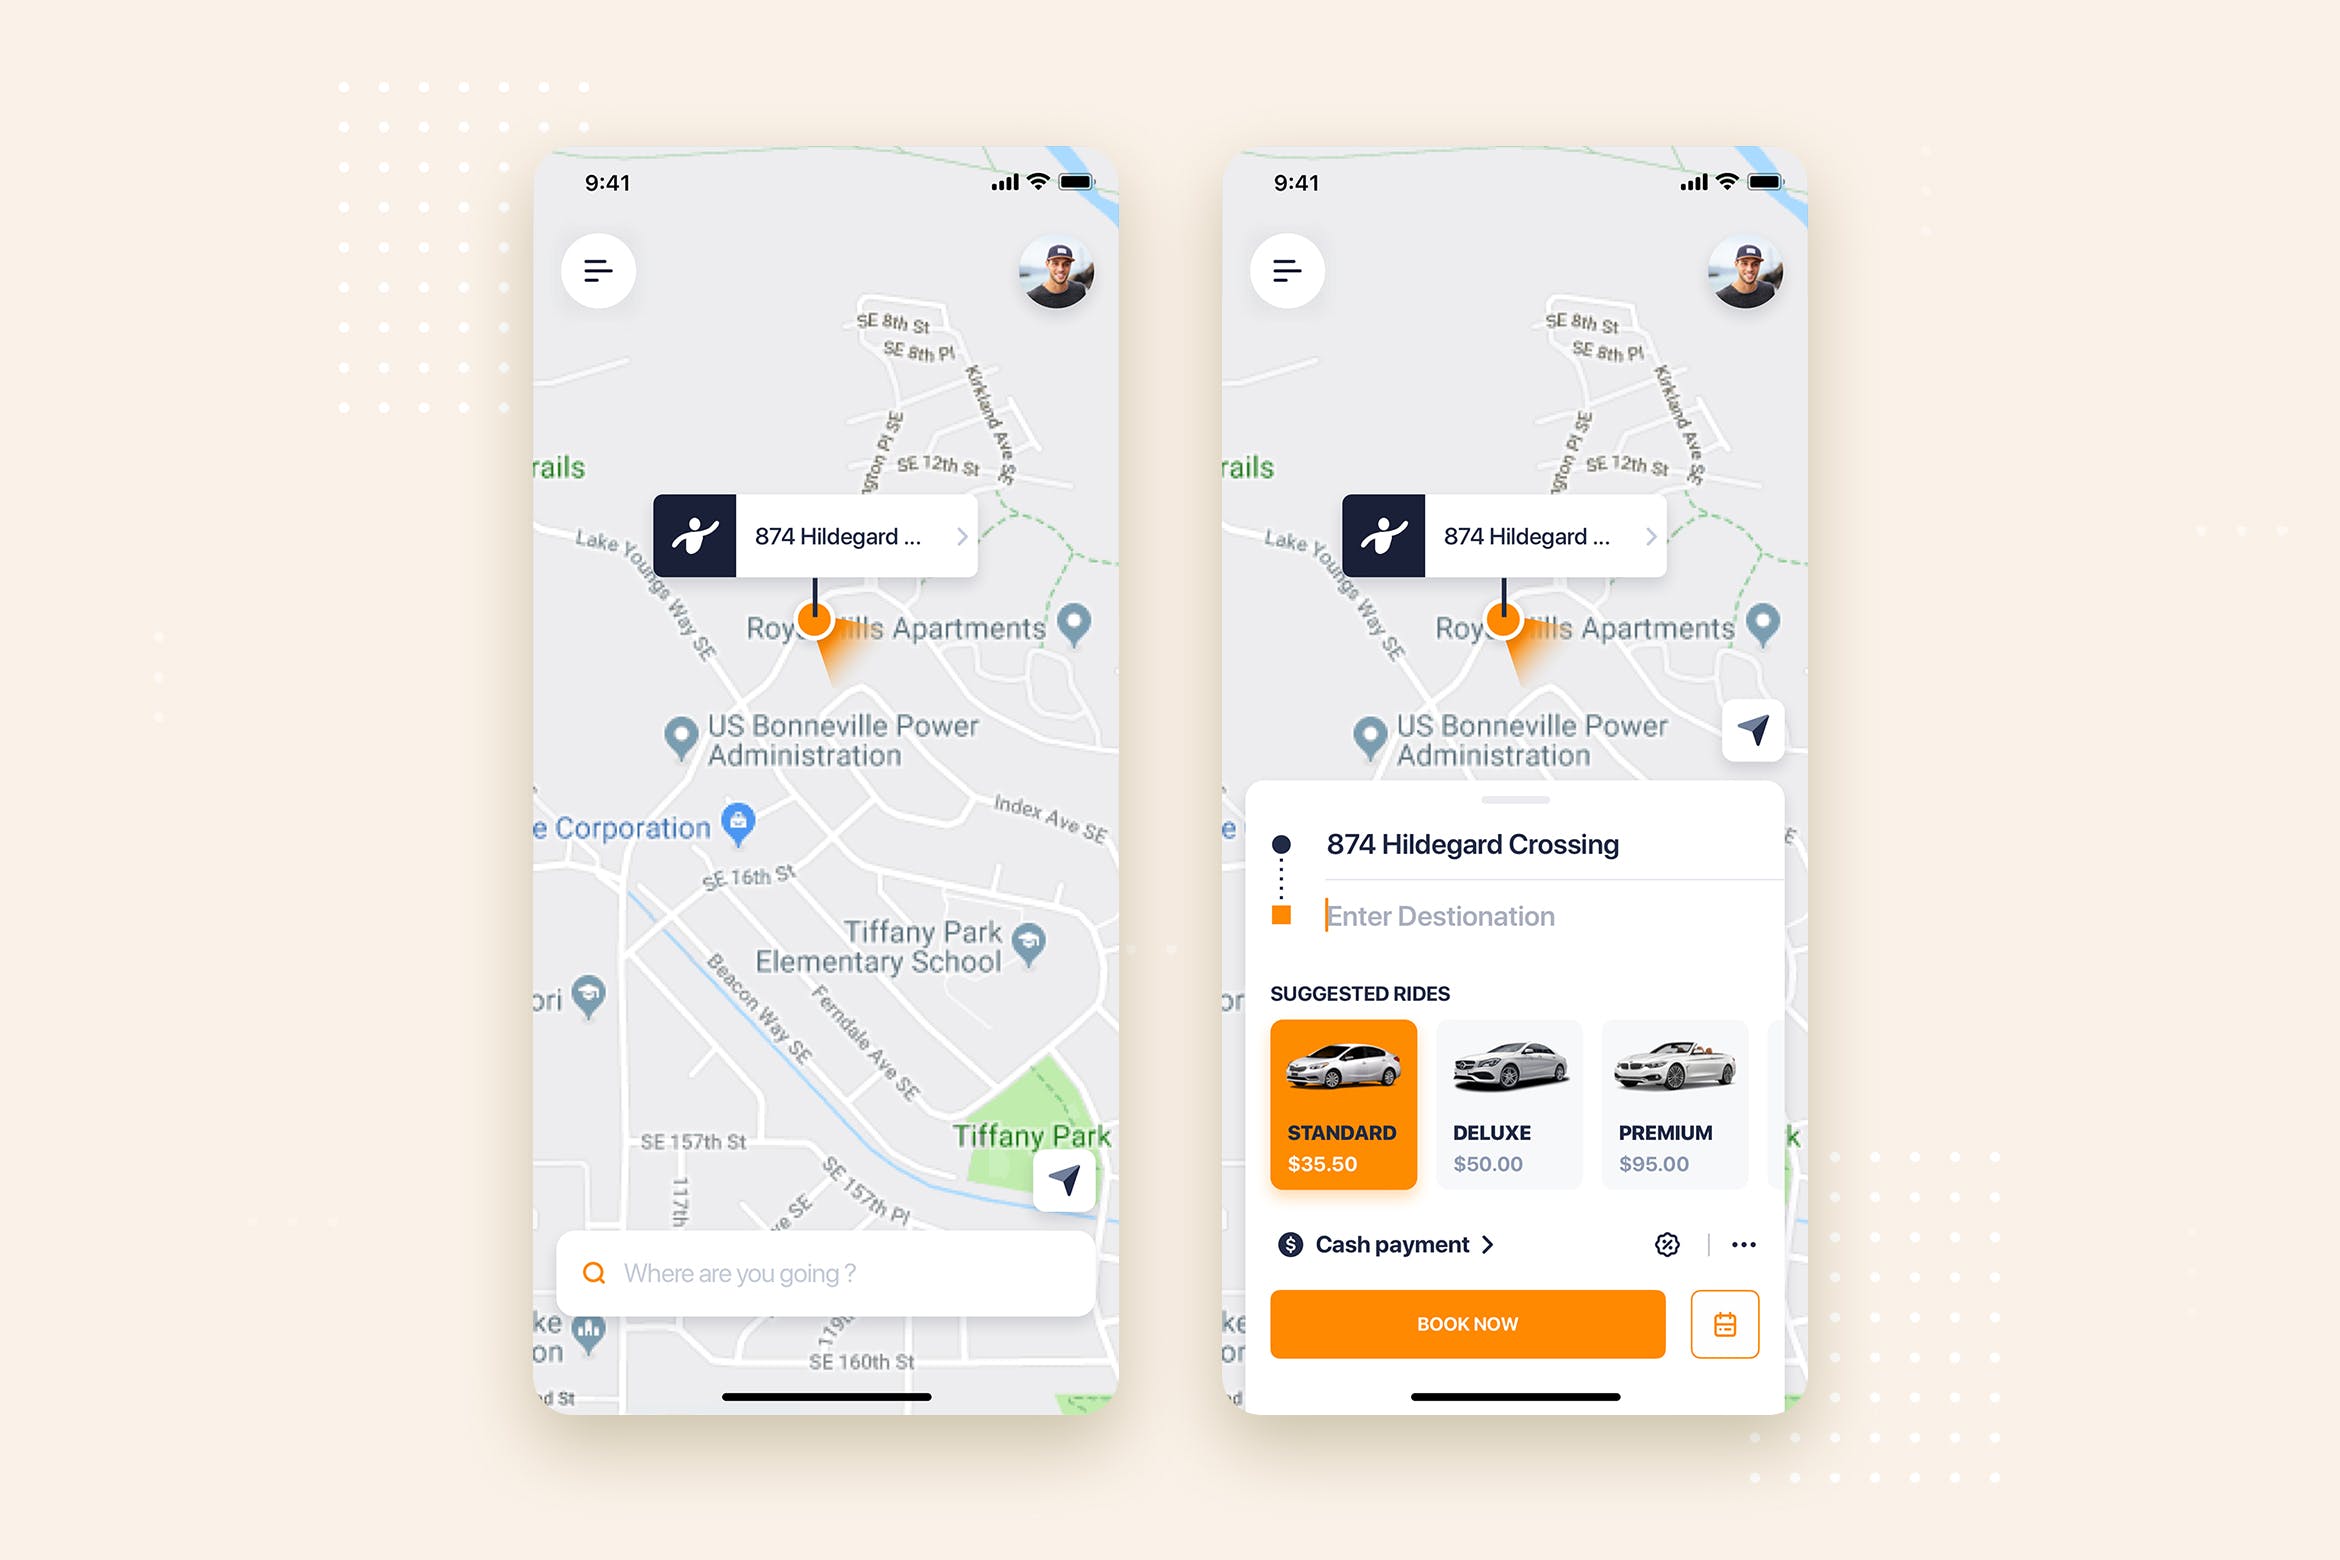 网约车APP应用预约界面UI设计素材中国精选模板 Taxi Booking Mobile App UI Kit Template插图